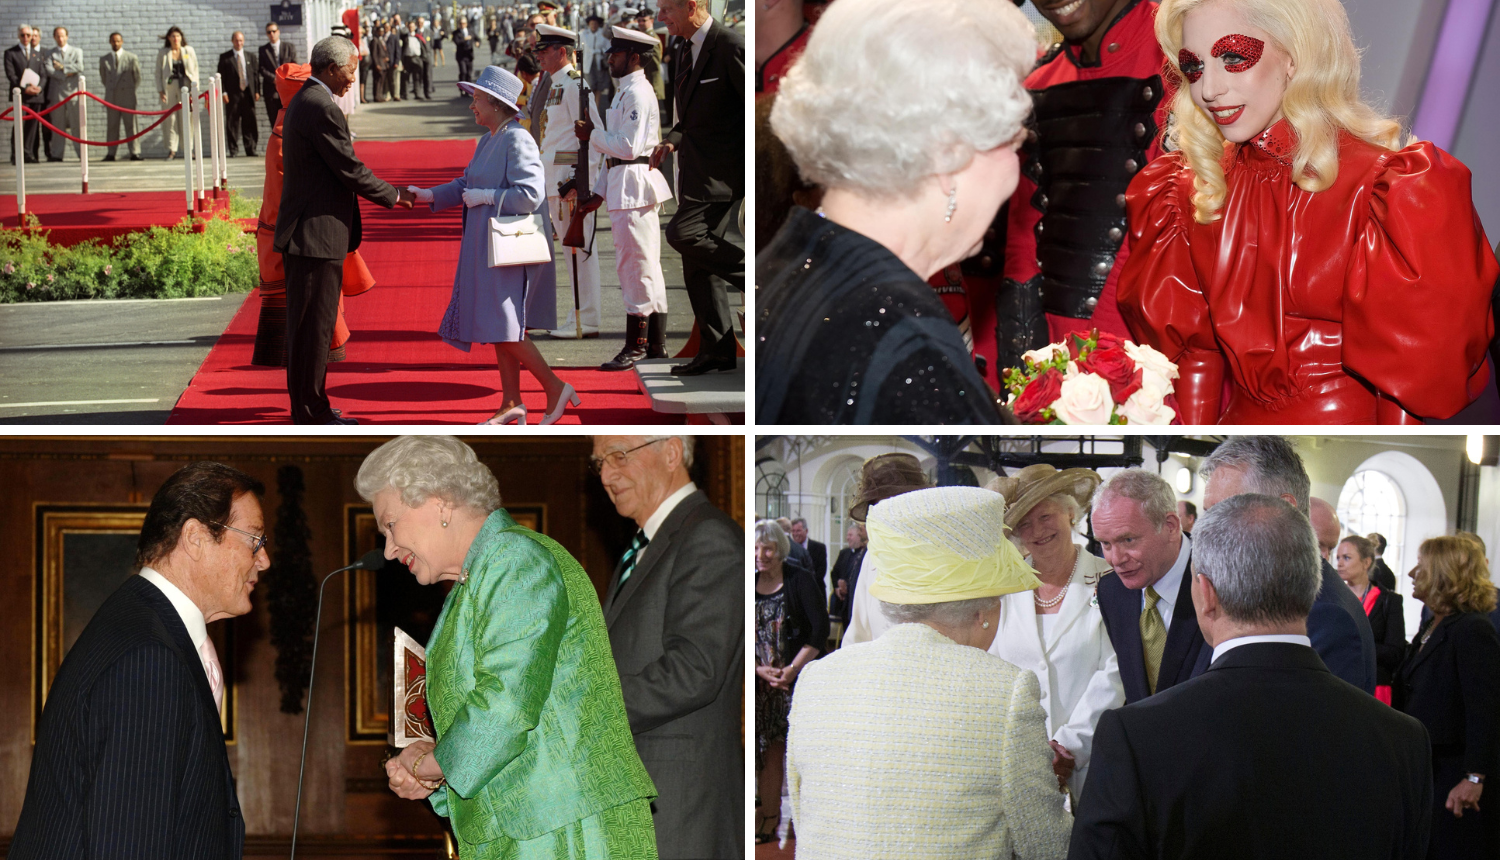 Istaknuti susreti Elizabete II.: Od jednog se diktatora skrivala u grmu Buckinghamske palače